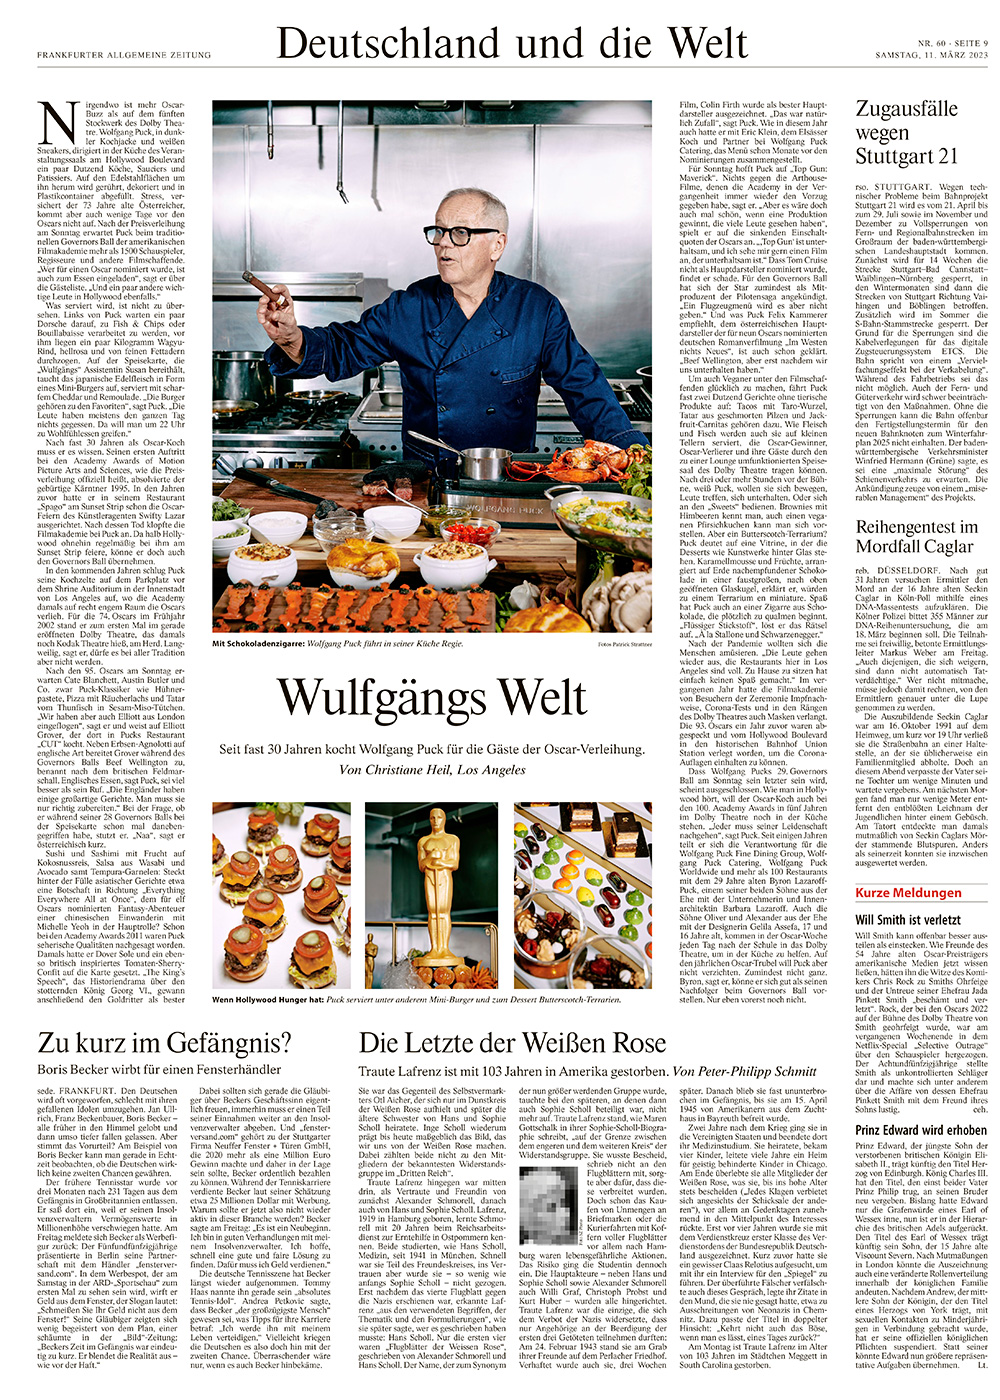 Wolfgang Puck, Austrian-American chef and restaurateur / FAZ